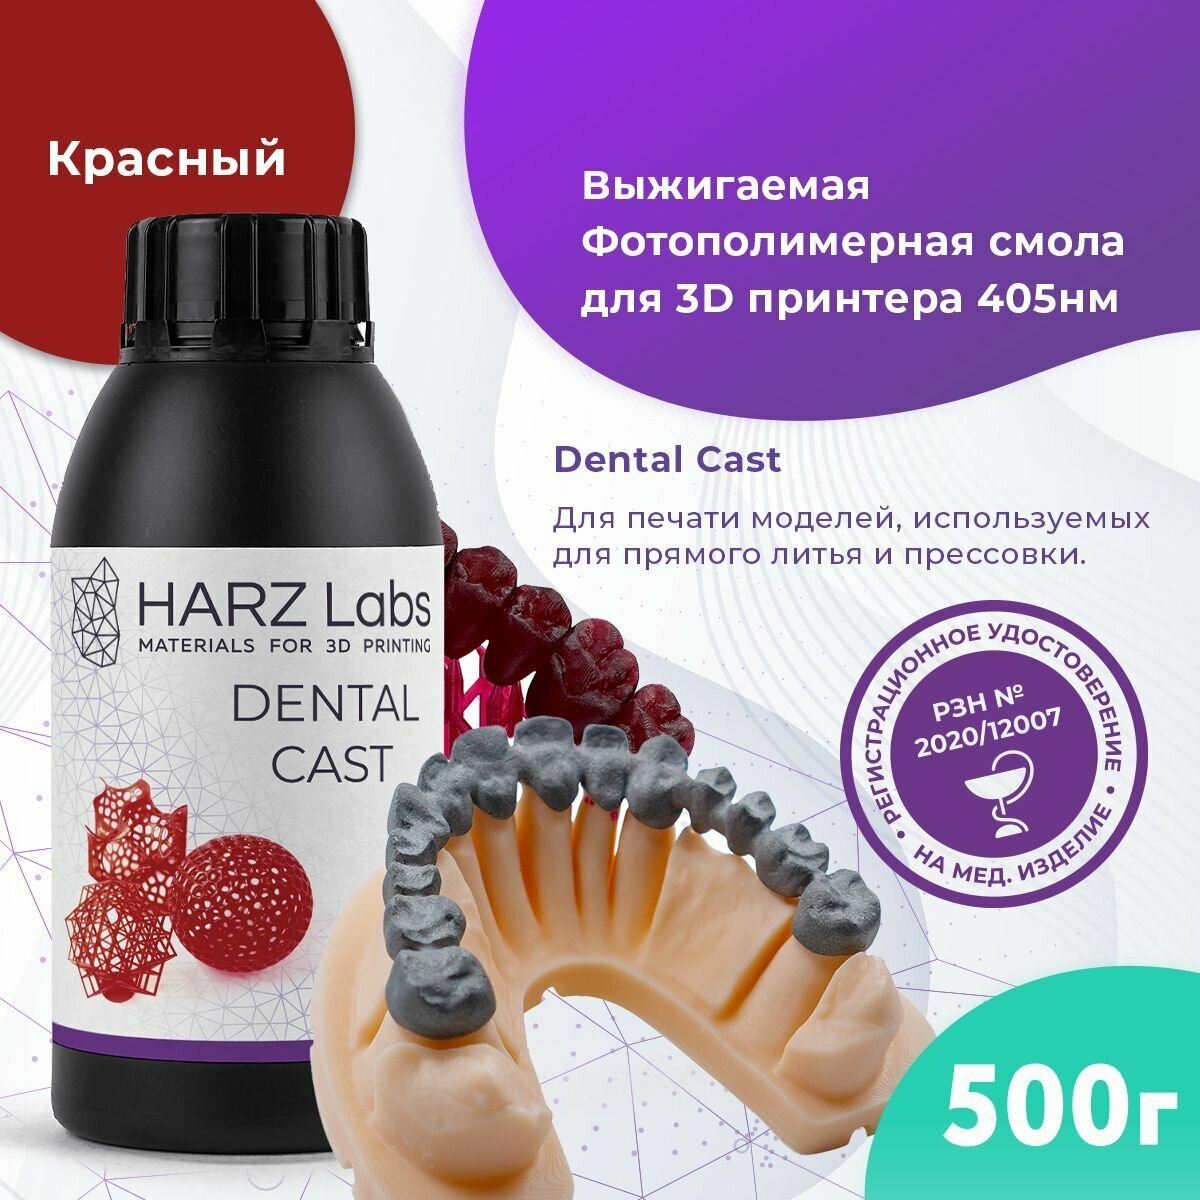 Выжигаемая фотополимерная смола HARZ Labs Dental Cast (0.5л)